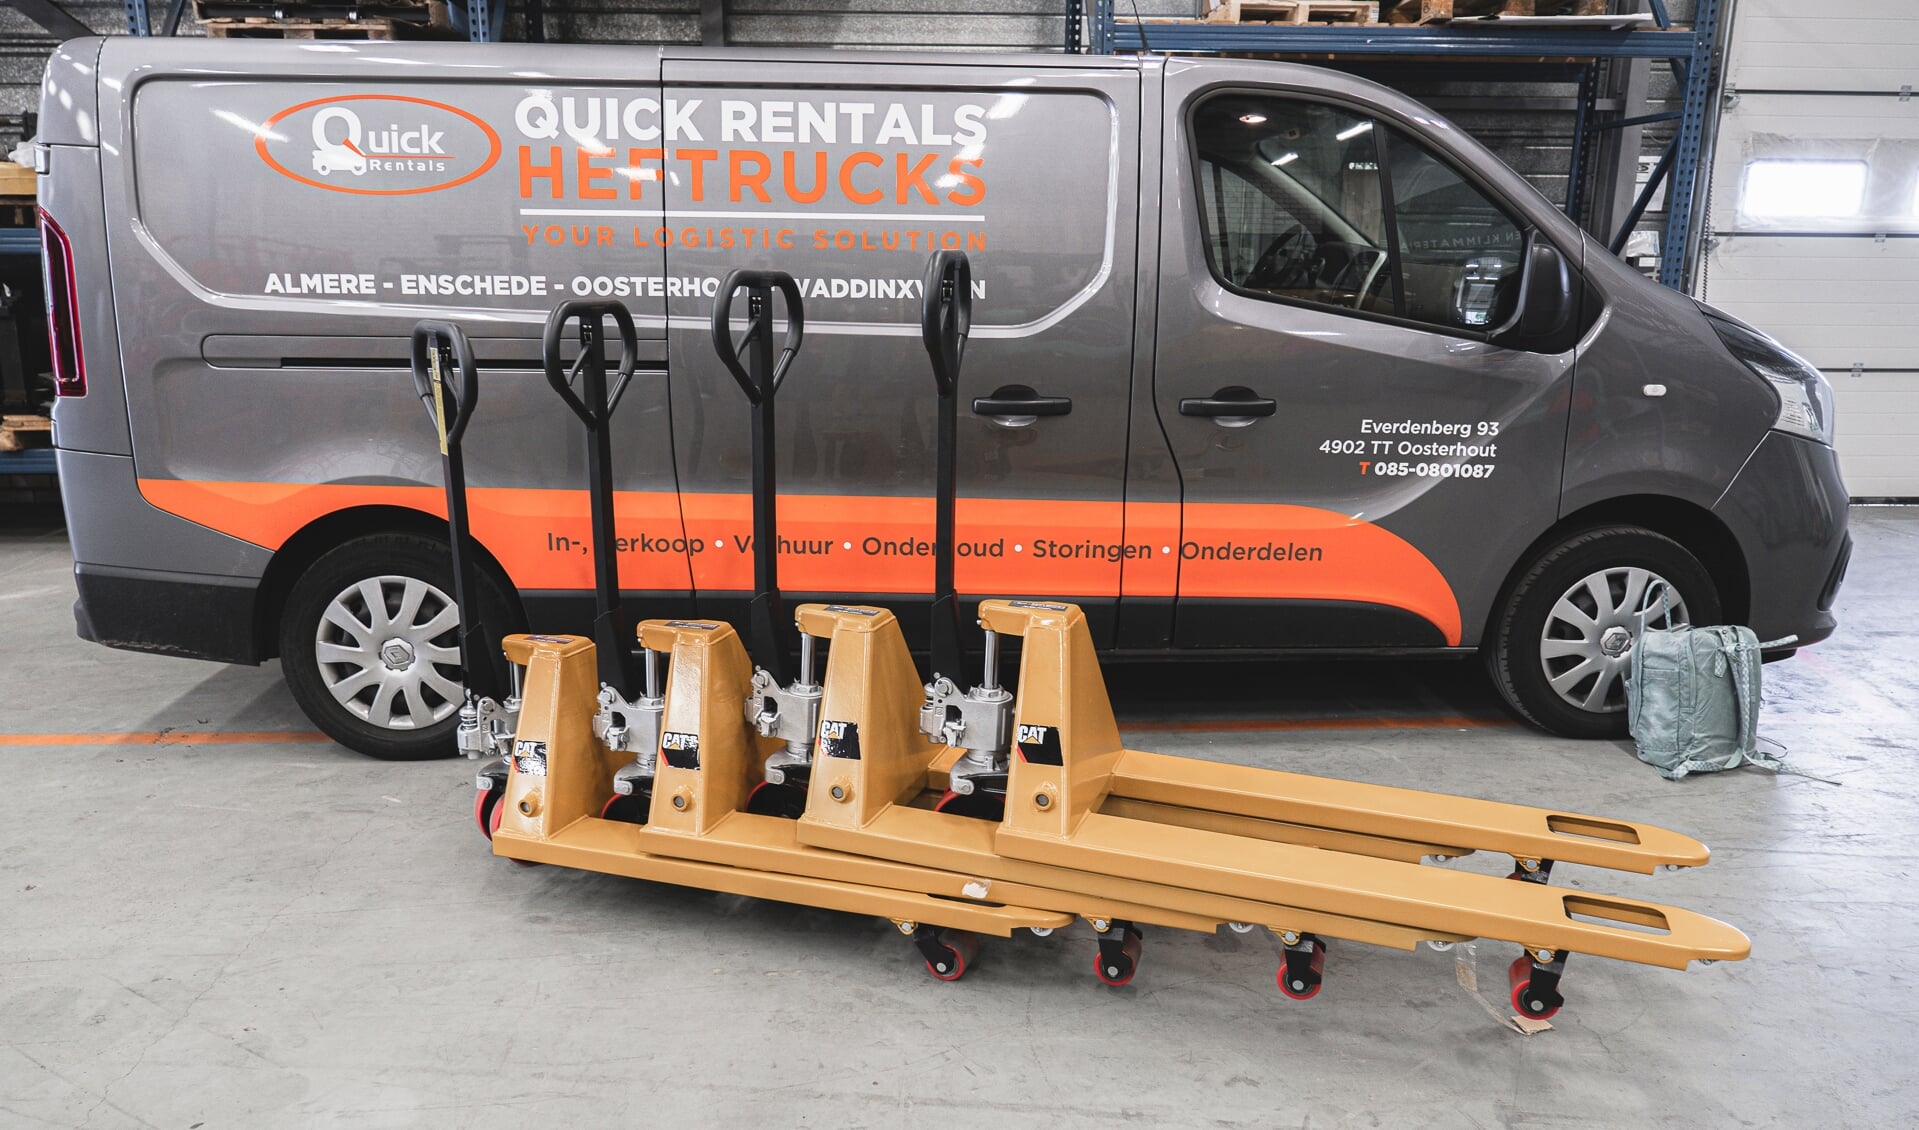 Quick Rentals levert gratis pompwagens en heftrucks om spullen van de beursvloer naar de vrachtwagens van Zending over Grenzen te vervoeren. (Foto: aangeleverd)